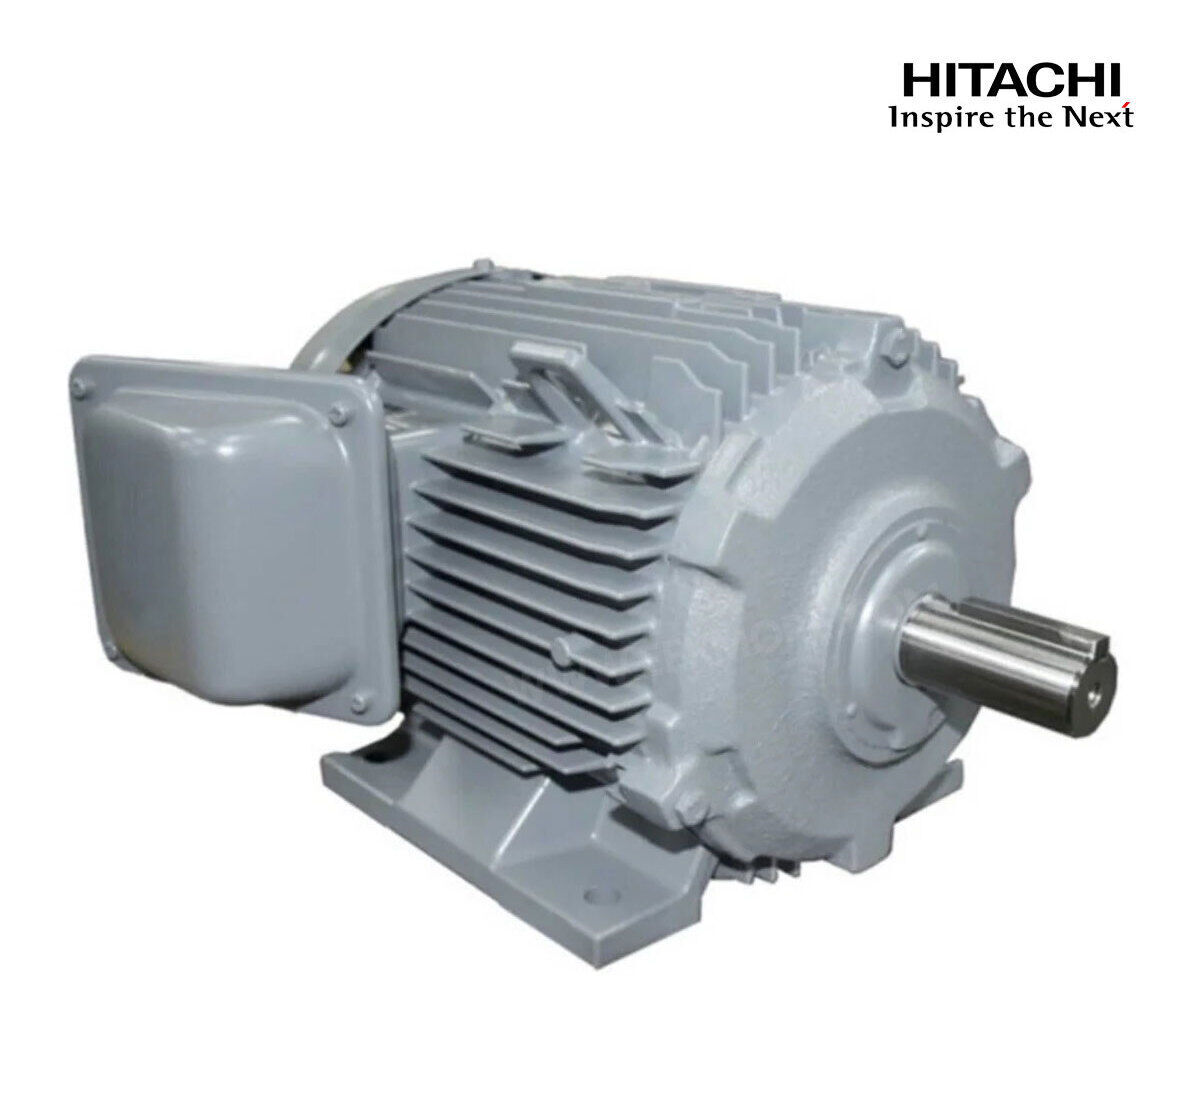 มอเตอร์ฮิตาชิของแท้ 100% HITACHI รุ่น TFO-K กำลัง 5 แรงม้า (3.7 KW.) กำลังไฟฟ้าที่ใช้ 380V ความเร็วรอบตัวเปล่า 1450 RPM แกนเพลามอเตอร์ 28 MM.รับประกัน 3 ปี มีของพร้อมจัดส่งทุกวัน